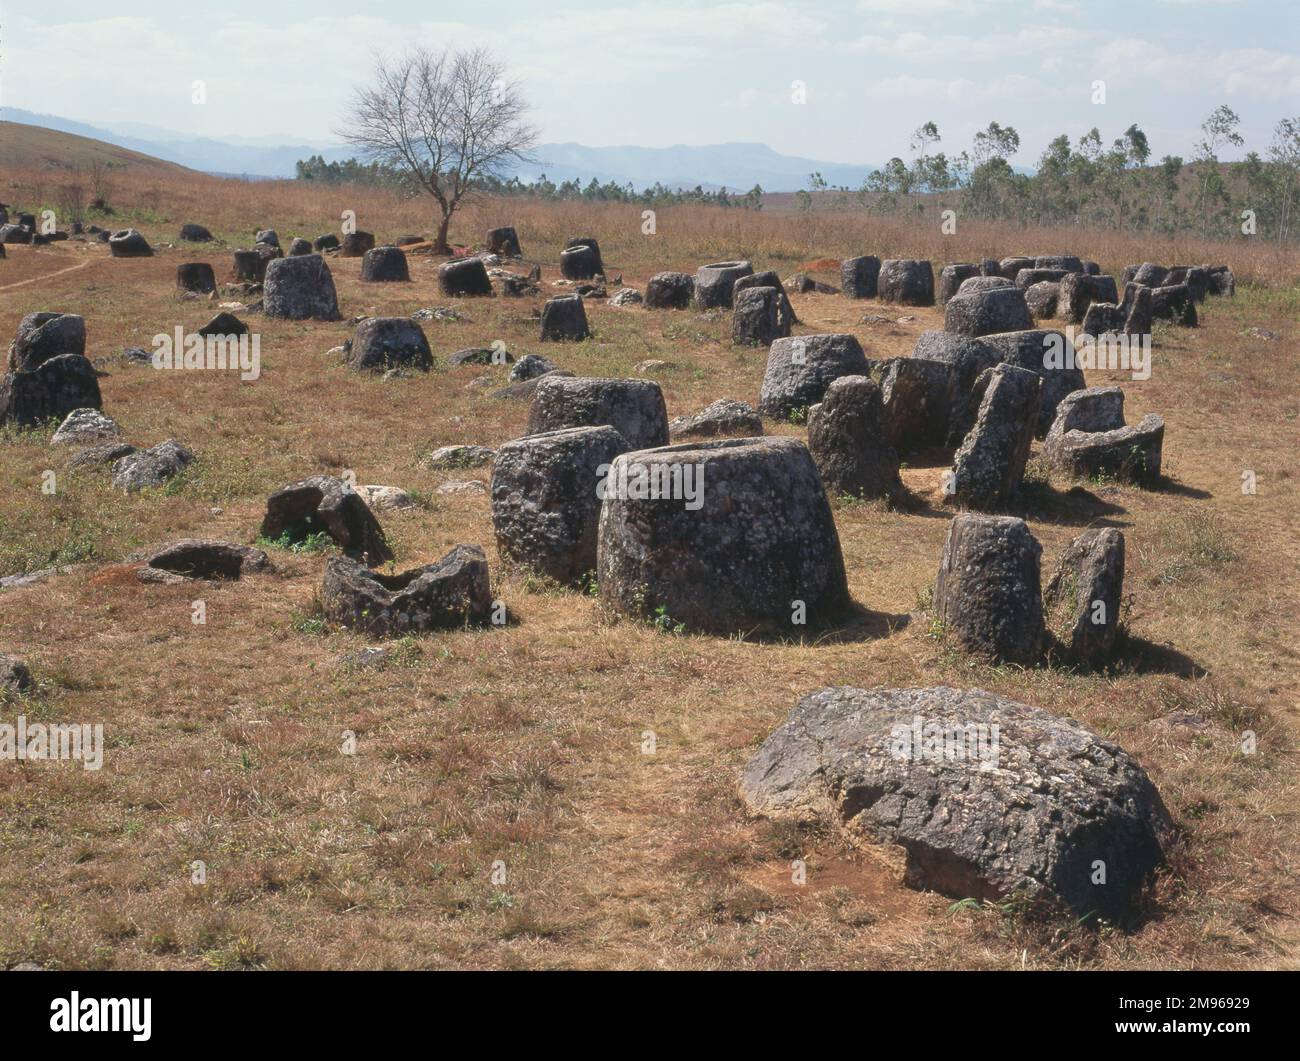 Beerdigungscontainer in der Ebene der Gläser in Xieng Khouang, Phonsavan, Laos. Tausende dieser Steingläser liegen verstreut in der Xieng Khouang Ebene in den Lao Highlands - Archäologen glauben, dass die Gläser vor 1500 bis 2000 Jahren verwendet wurden. Stockfoto